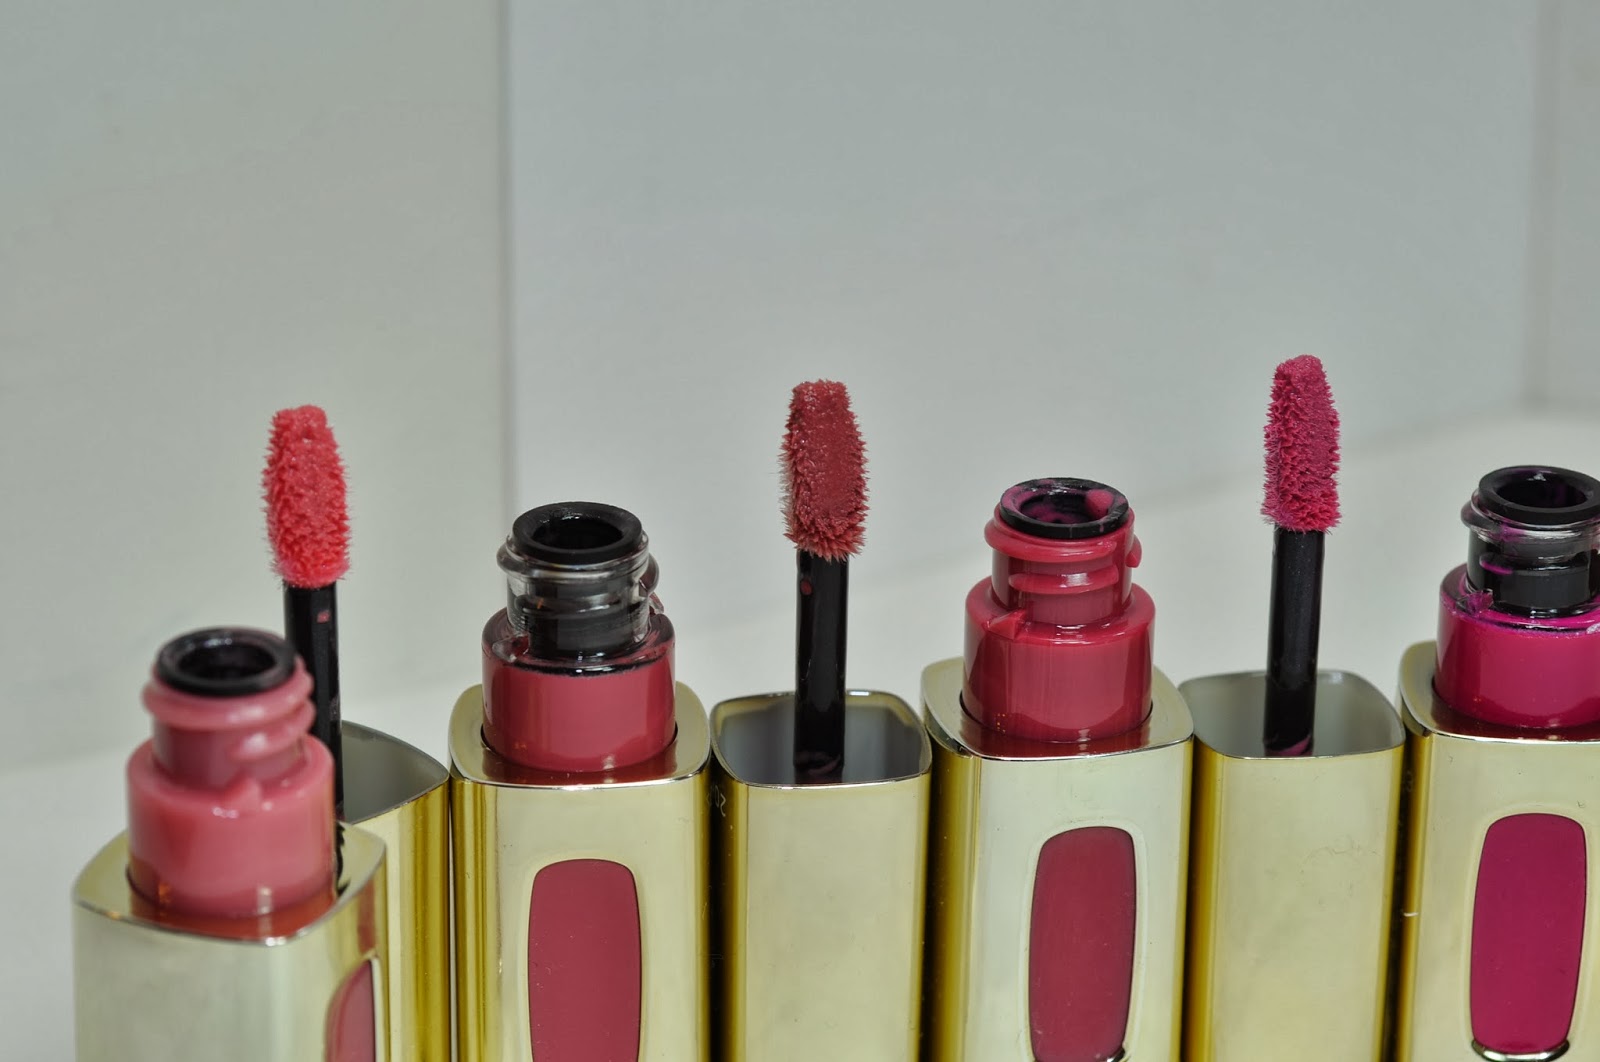 L'Oreal Colour Riche Extraordinaire Liquid Lipstick Swatches